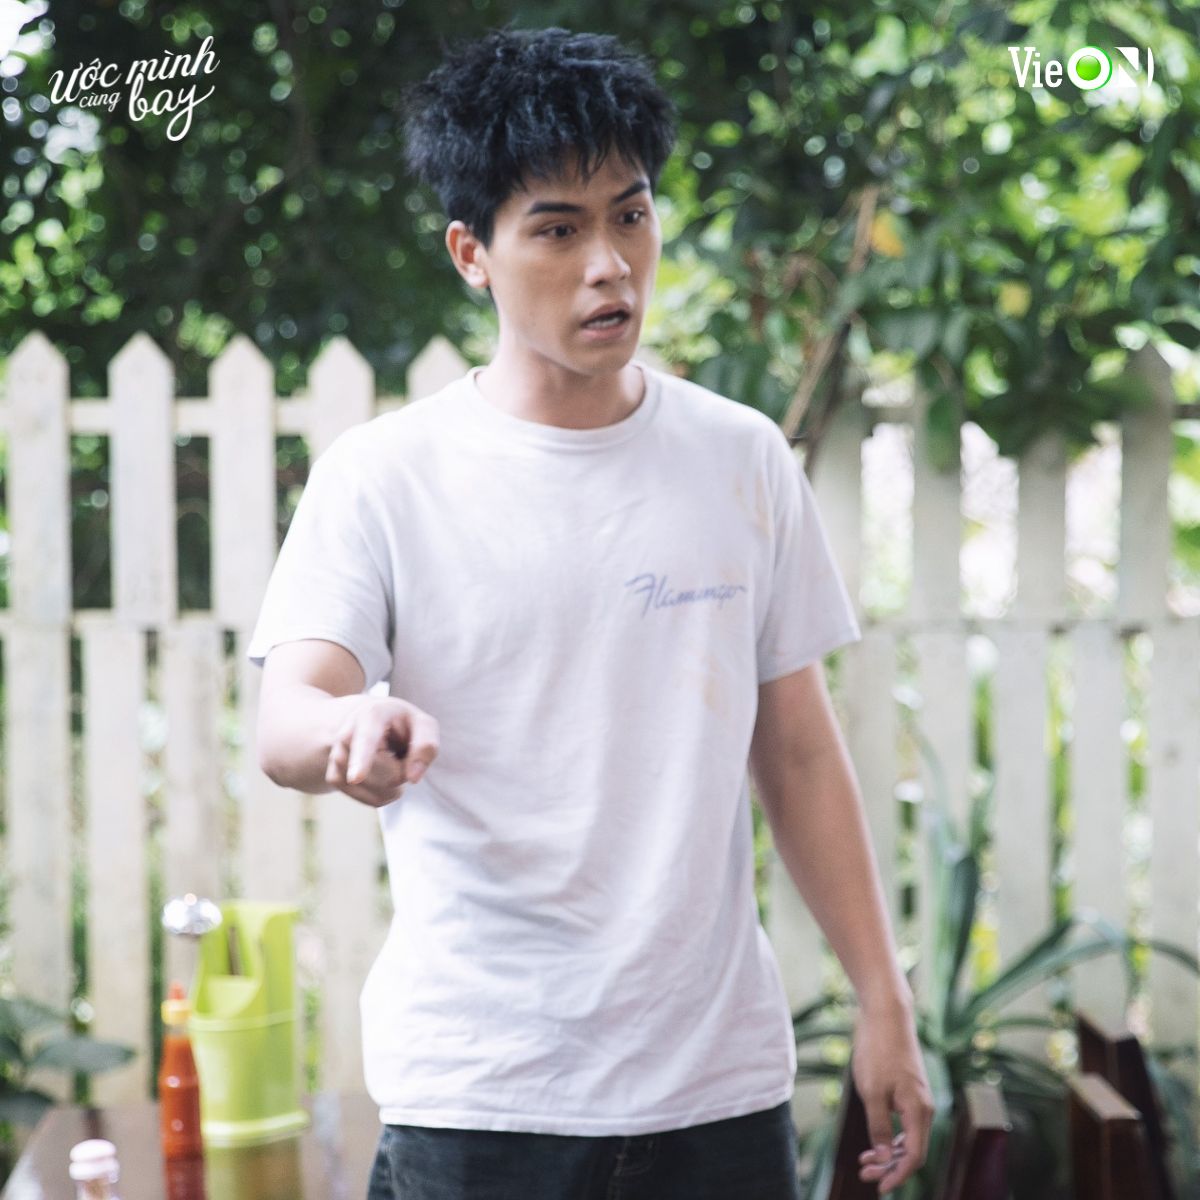 Diễn viên Võ Điền Gia Huy trong phim Ước mình cùng bay. Ảnh: VieOn